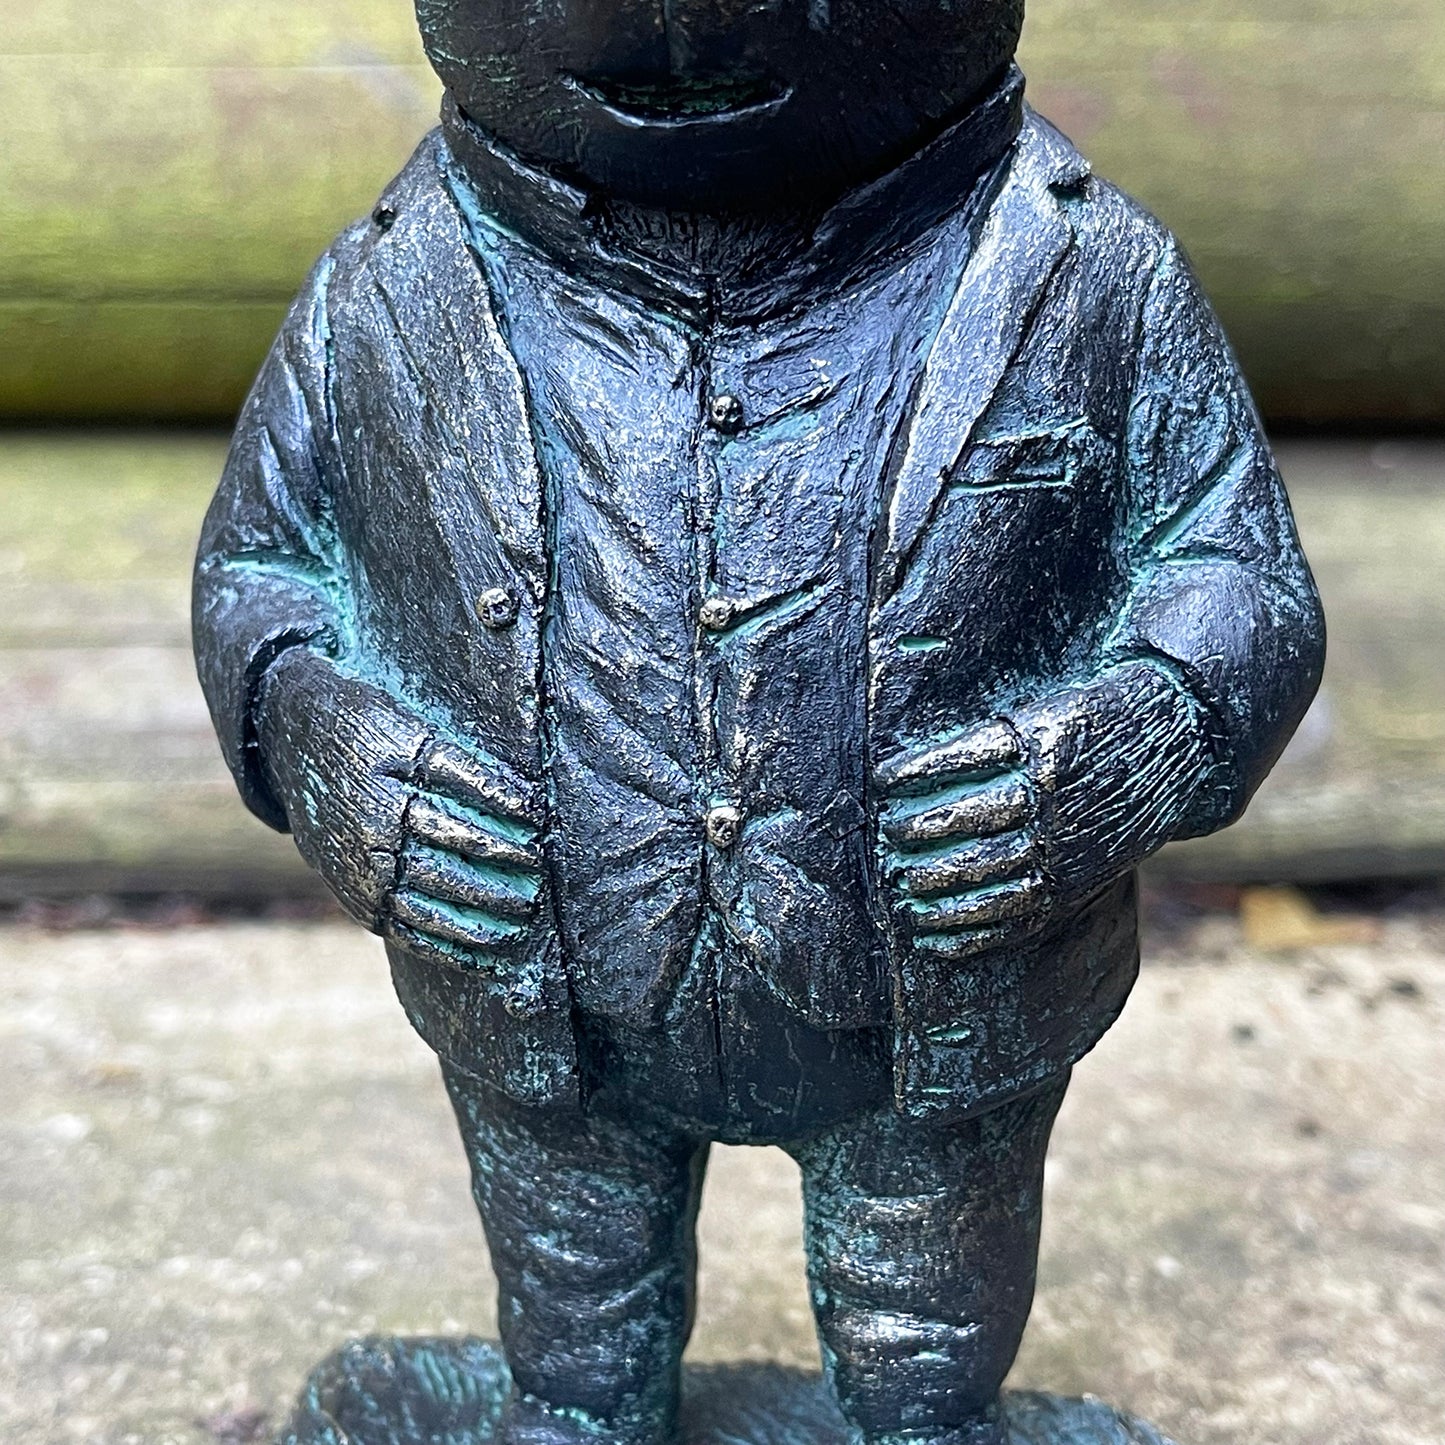 Bronze Mr Mole Ornament